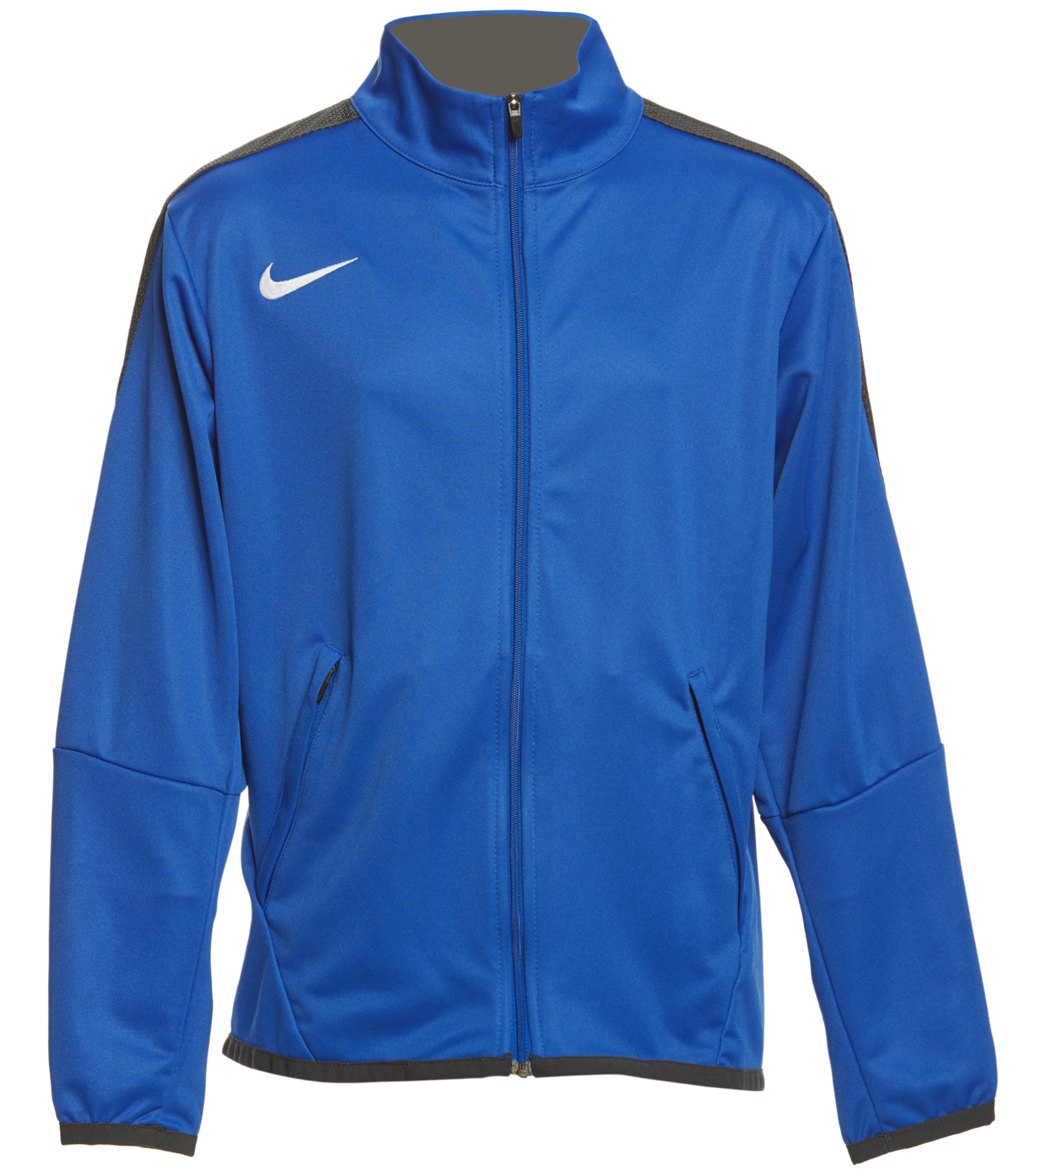 Nike Youth Women's Training Jacket - Royal Medium Size Medium Polyester - Swimoutlet.com